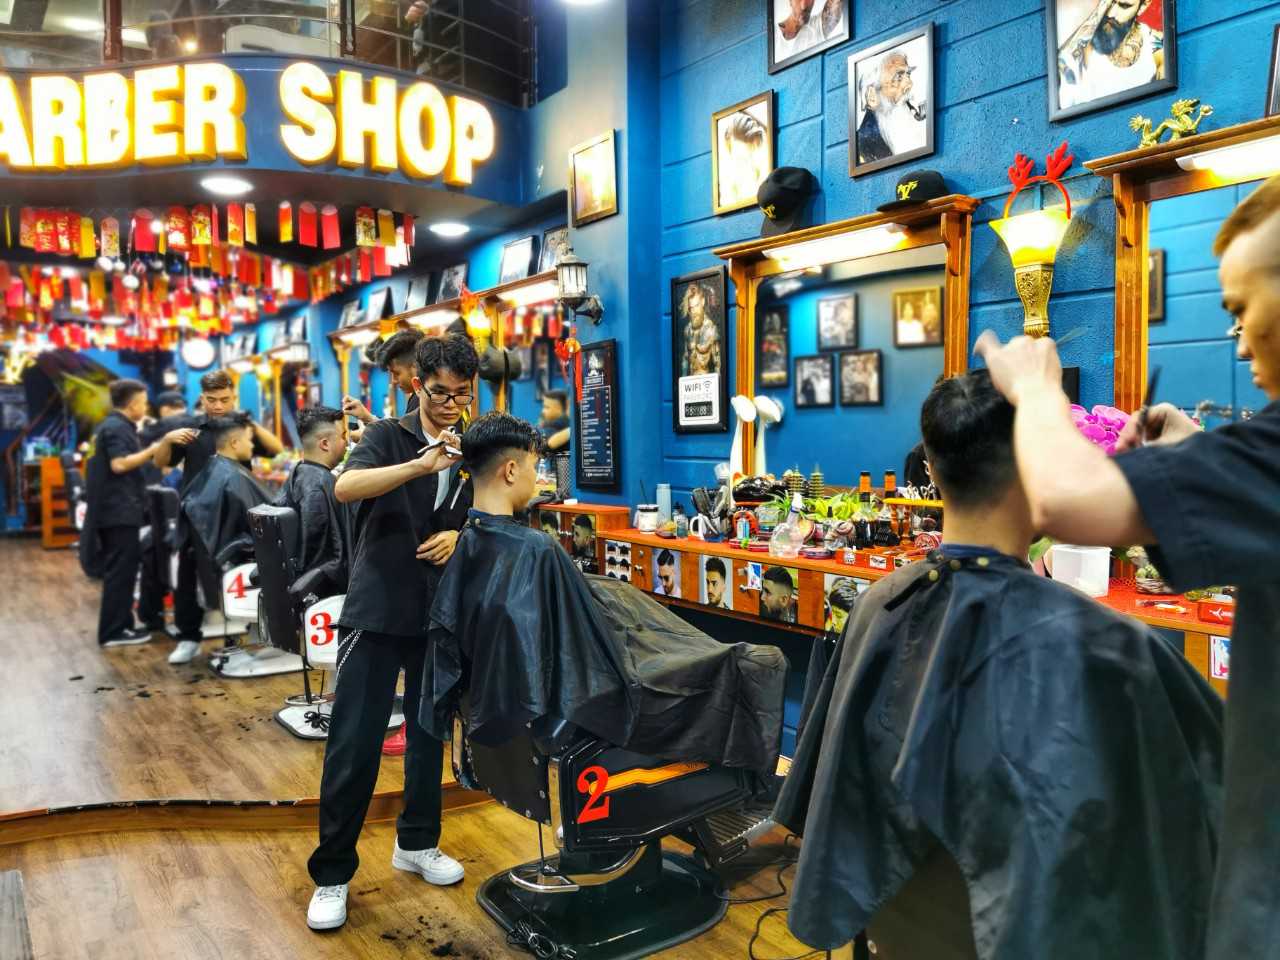 Tổng hợp tiệm cắt tóc nam đẹp ở Sài Gòn nổi tiếng